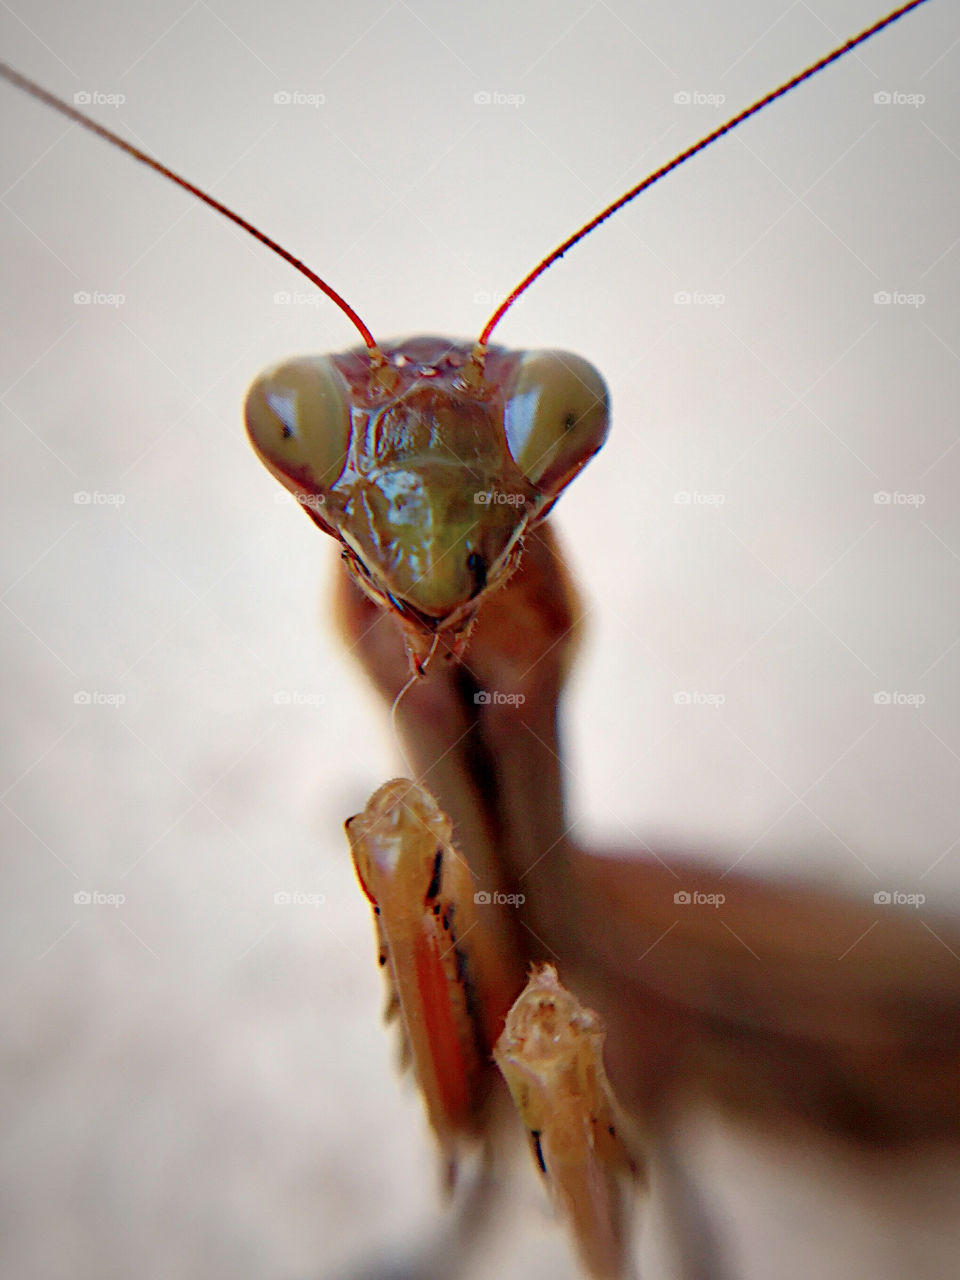 Macro of an praying mantis taken with iPhone 6